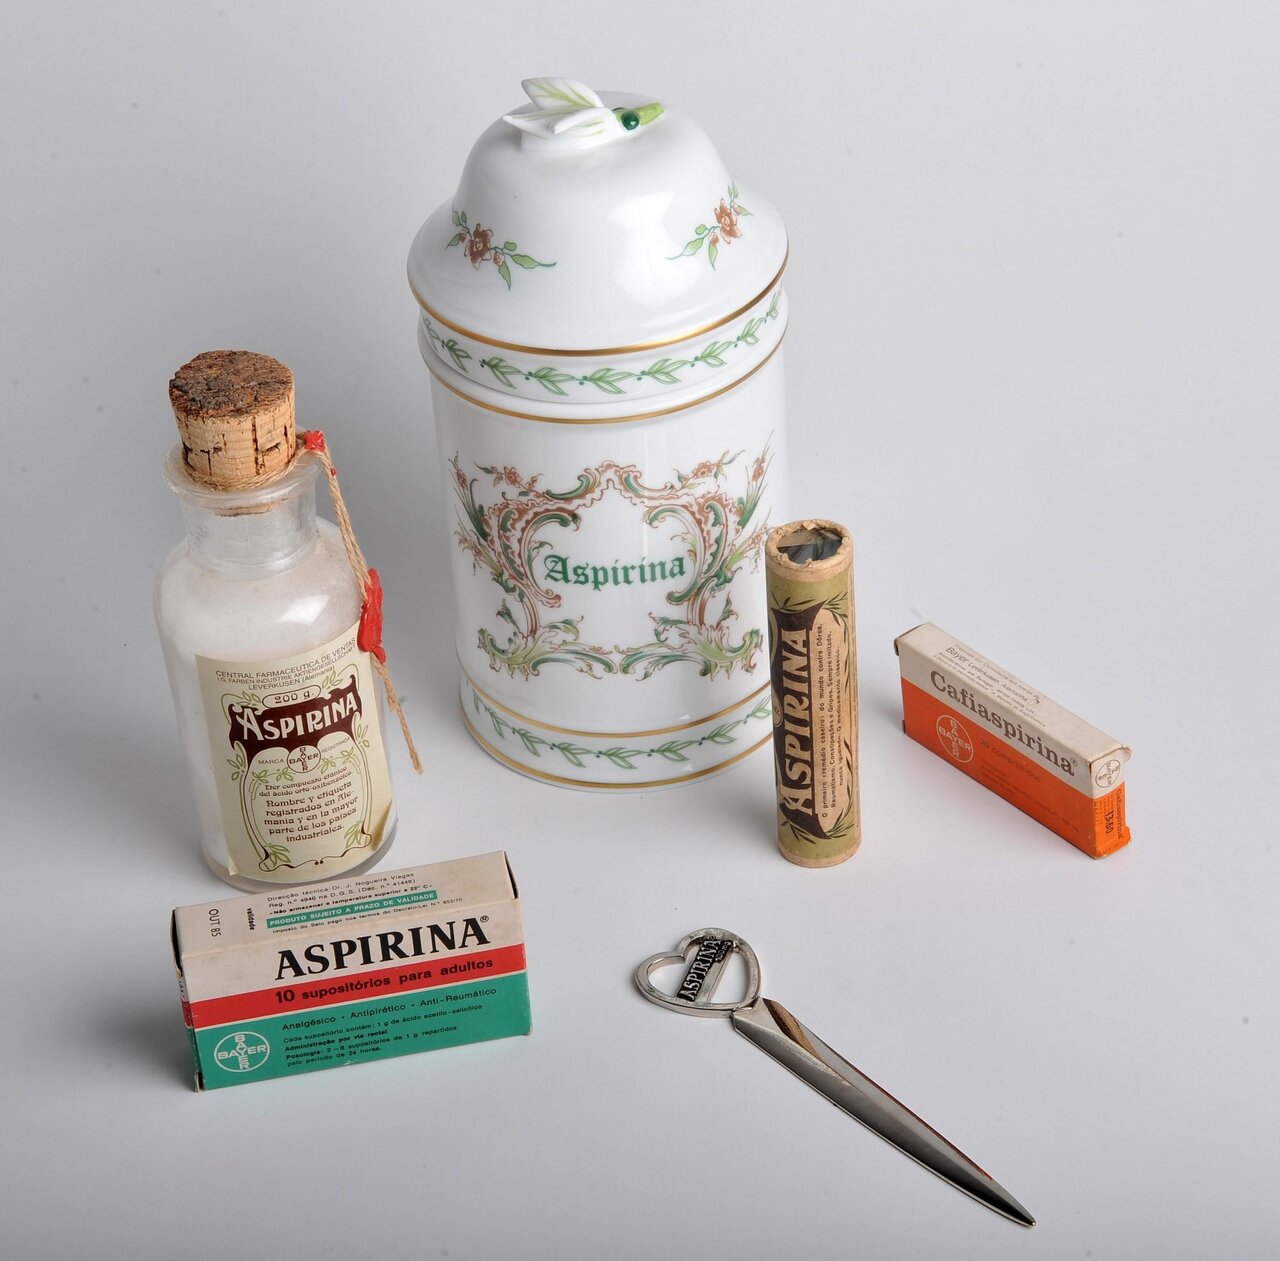 embalagens antigas aspirina - (Português do Brasil) Você sabe qual foi o primeiro fármaco a ser comercializado no mundo? (V.5, N.3, P.1, 2022)